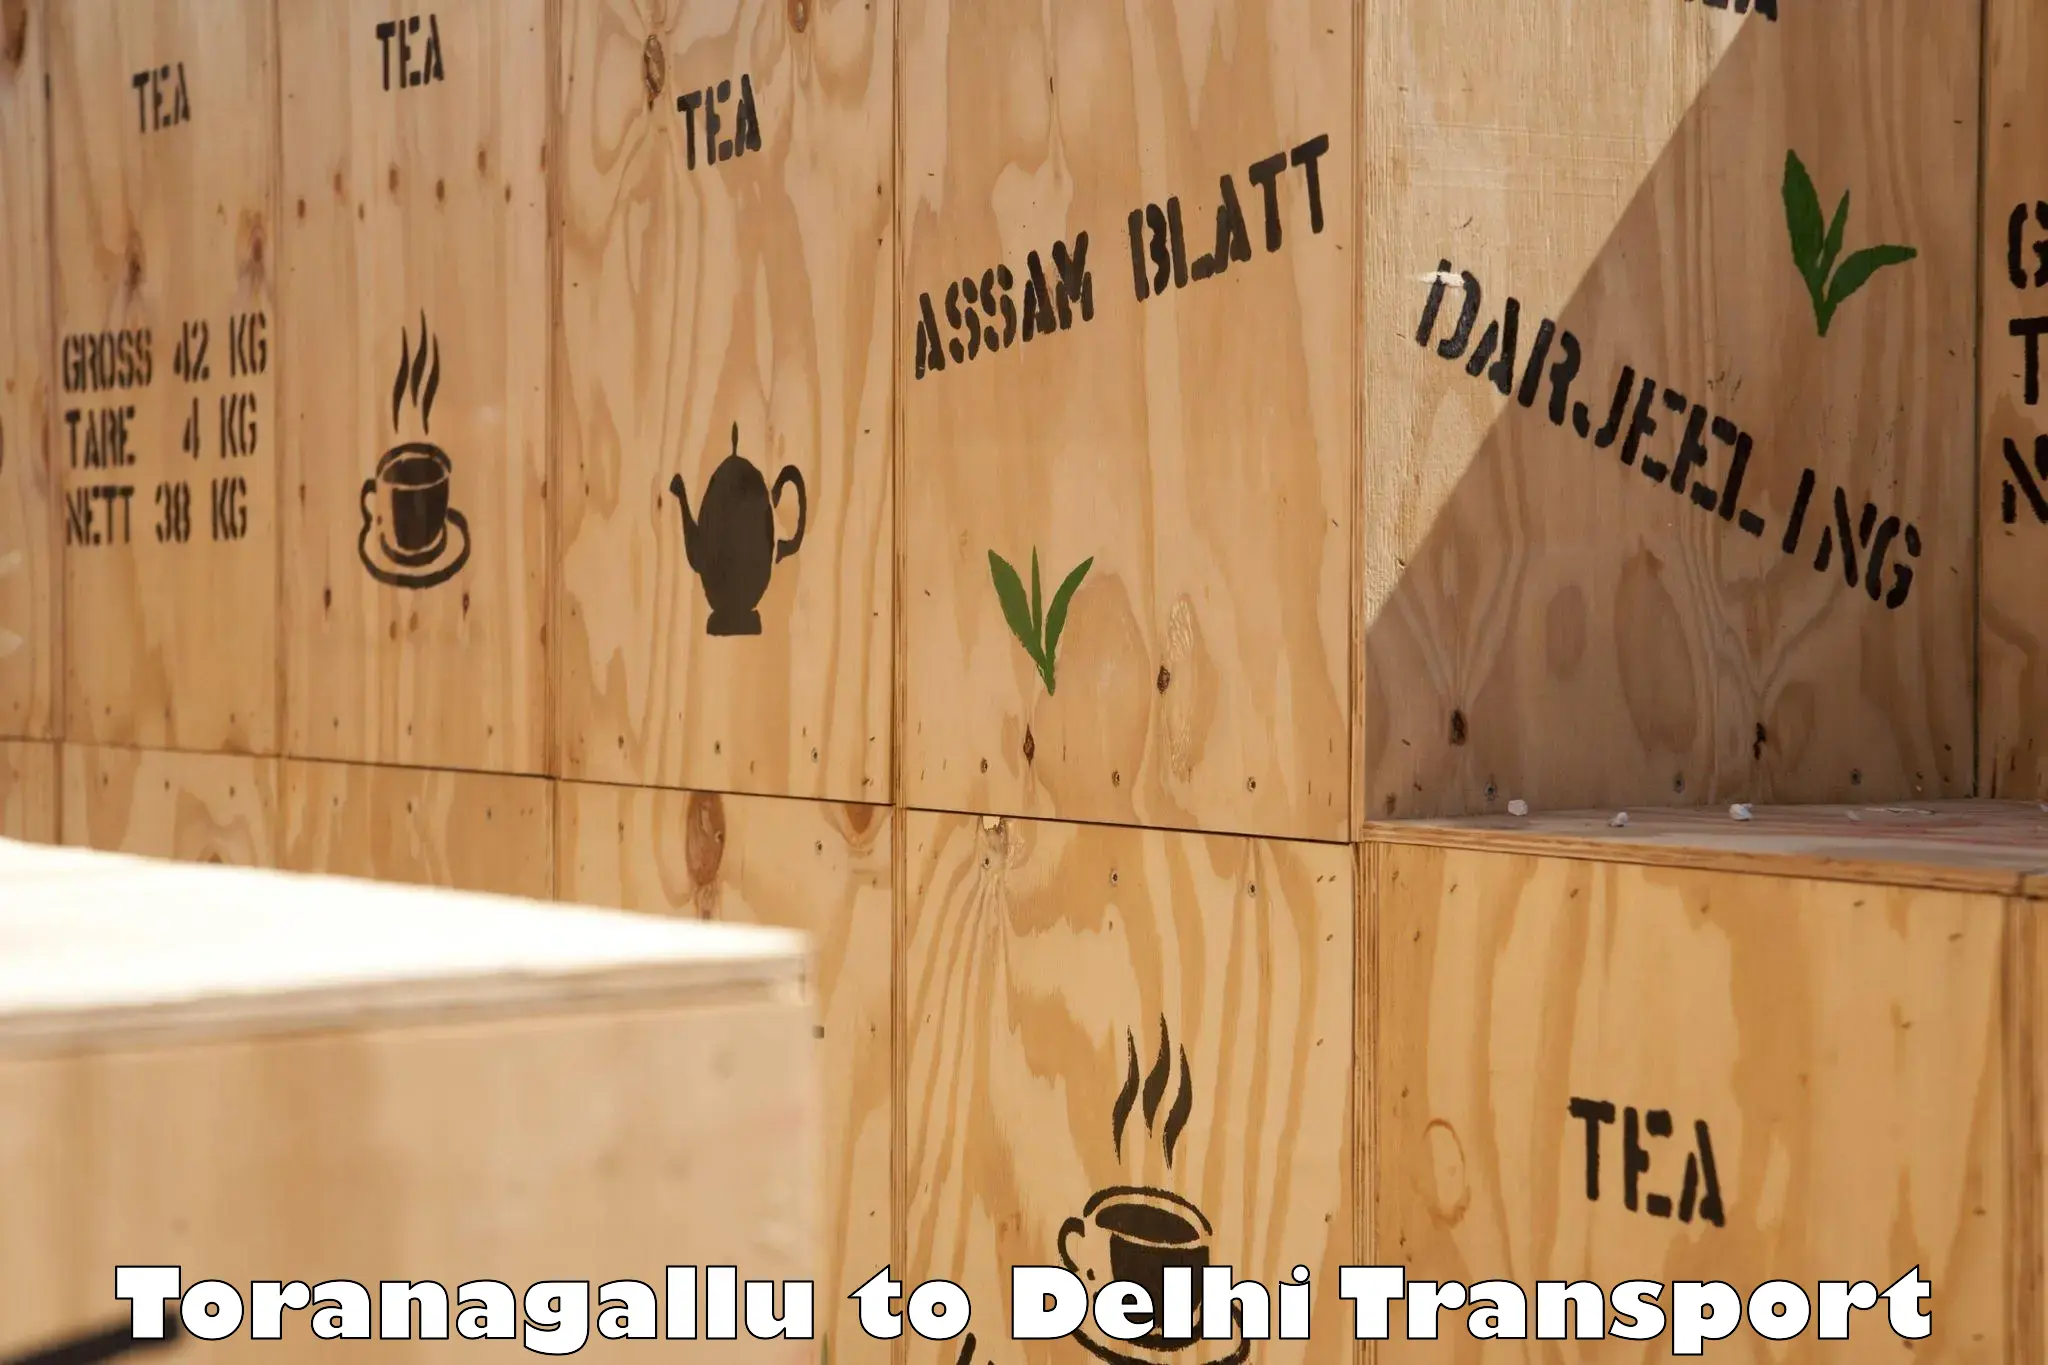 Pick up transport service Toranagallu to IIT Delhi